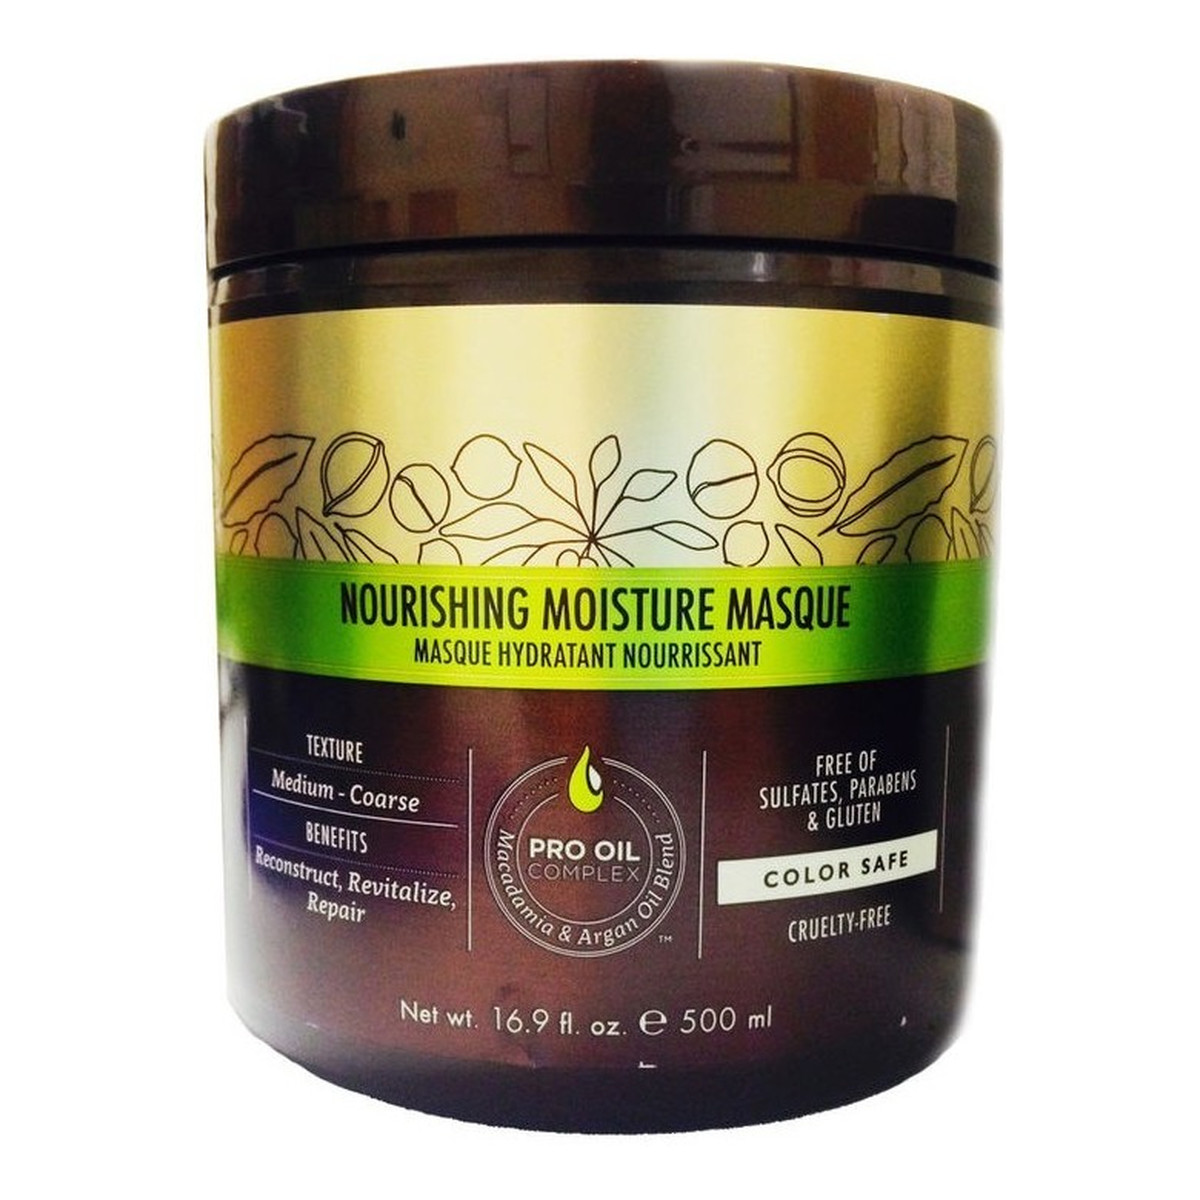 Macadamia Professional Nourishing Moisture Masque Maska nawilżająca do włosów normalnych i grubych 500ml